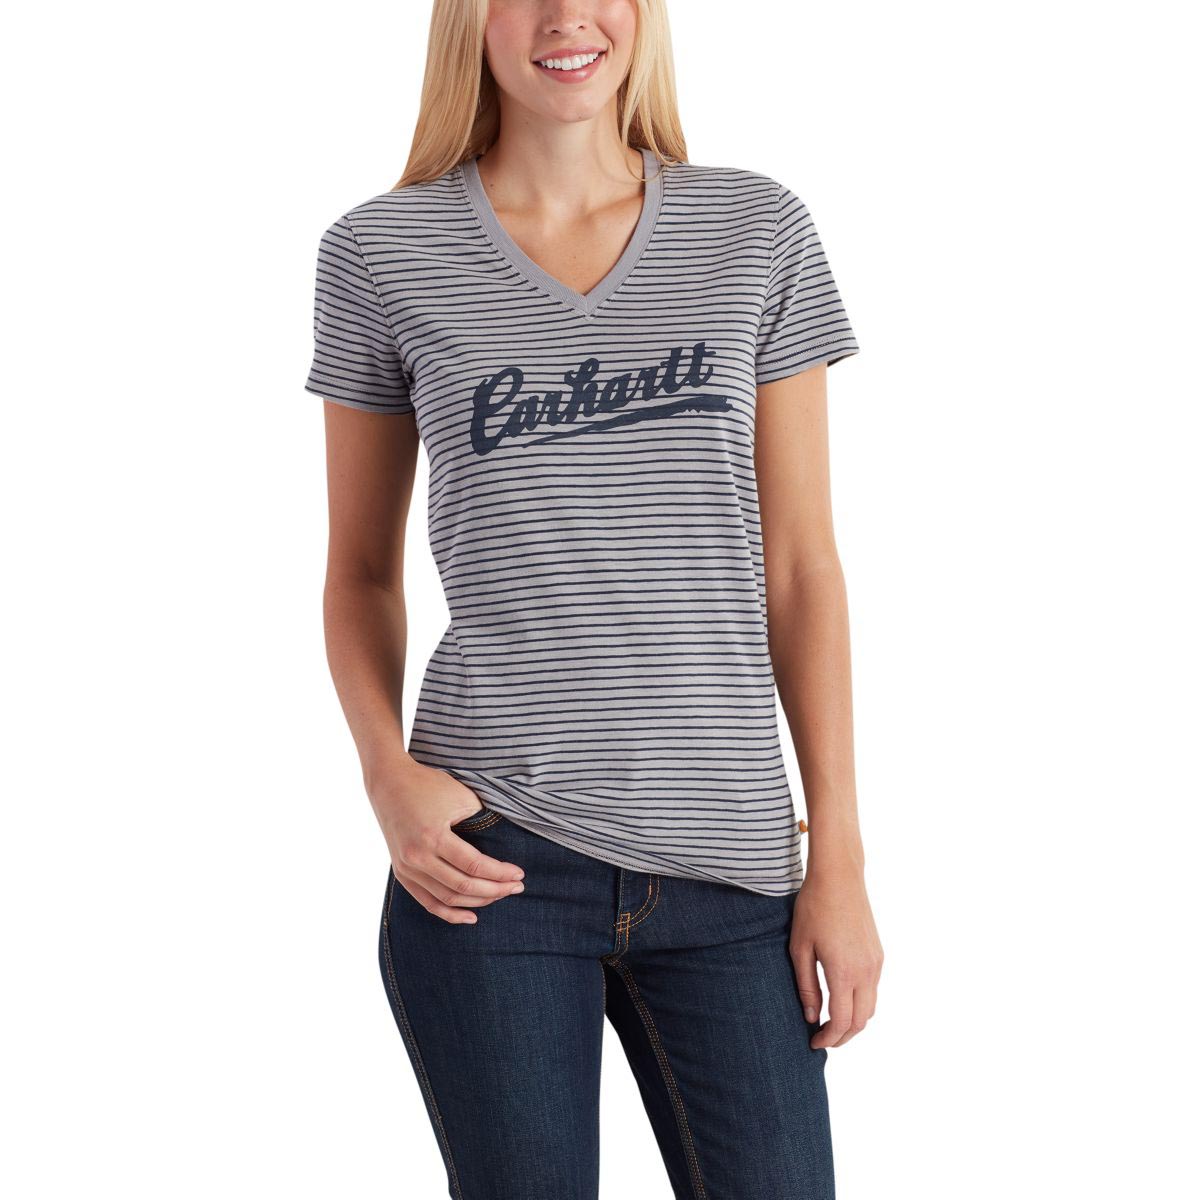 Carhartt Womens Wellton Short Sleeve Striped Logo T Shirt